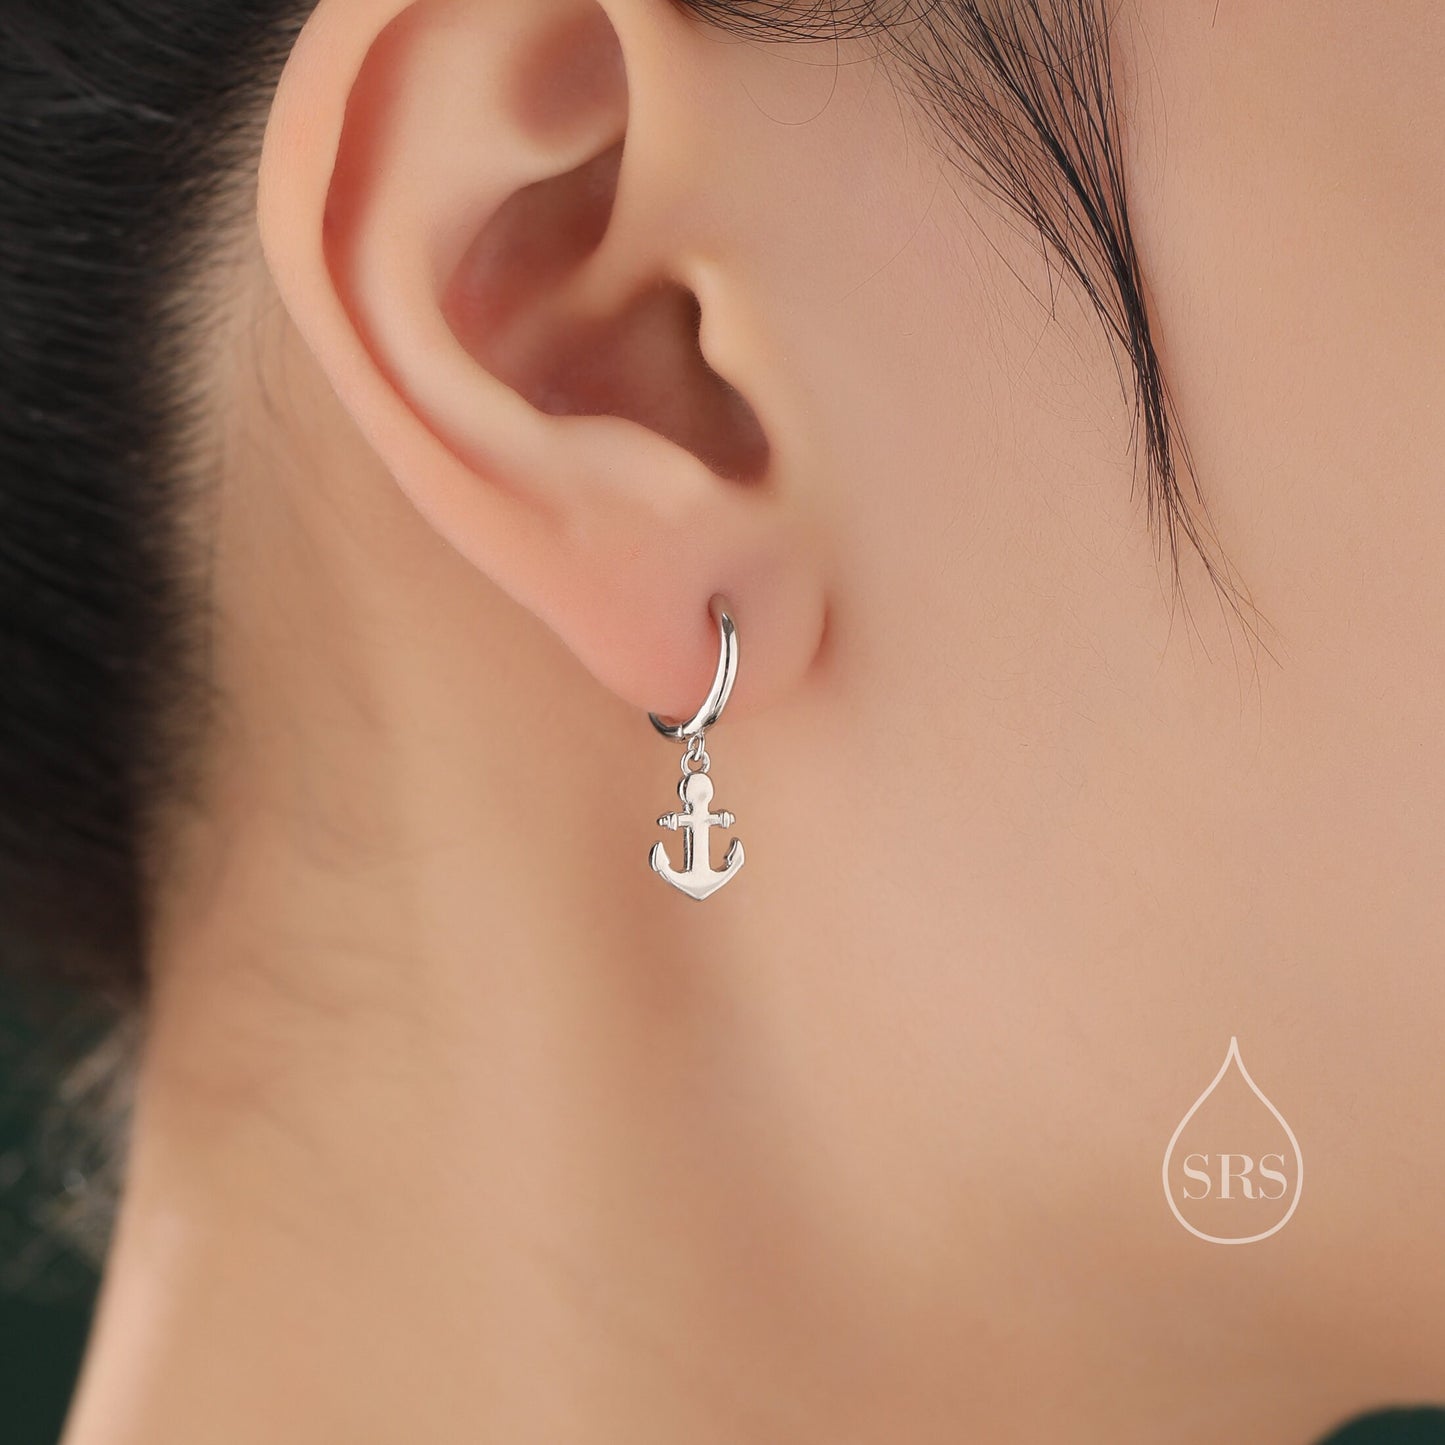 Anchor Huggie Hoop Earrings in Sterling Silver, Silver or Gold or Rose Gold, Tiny Anchor Earrings, Nautical Ocean Theme Earrings